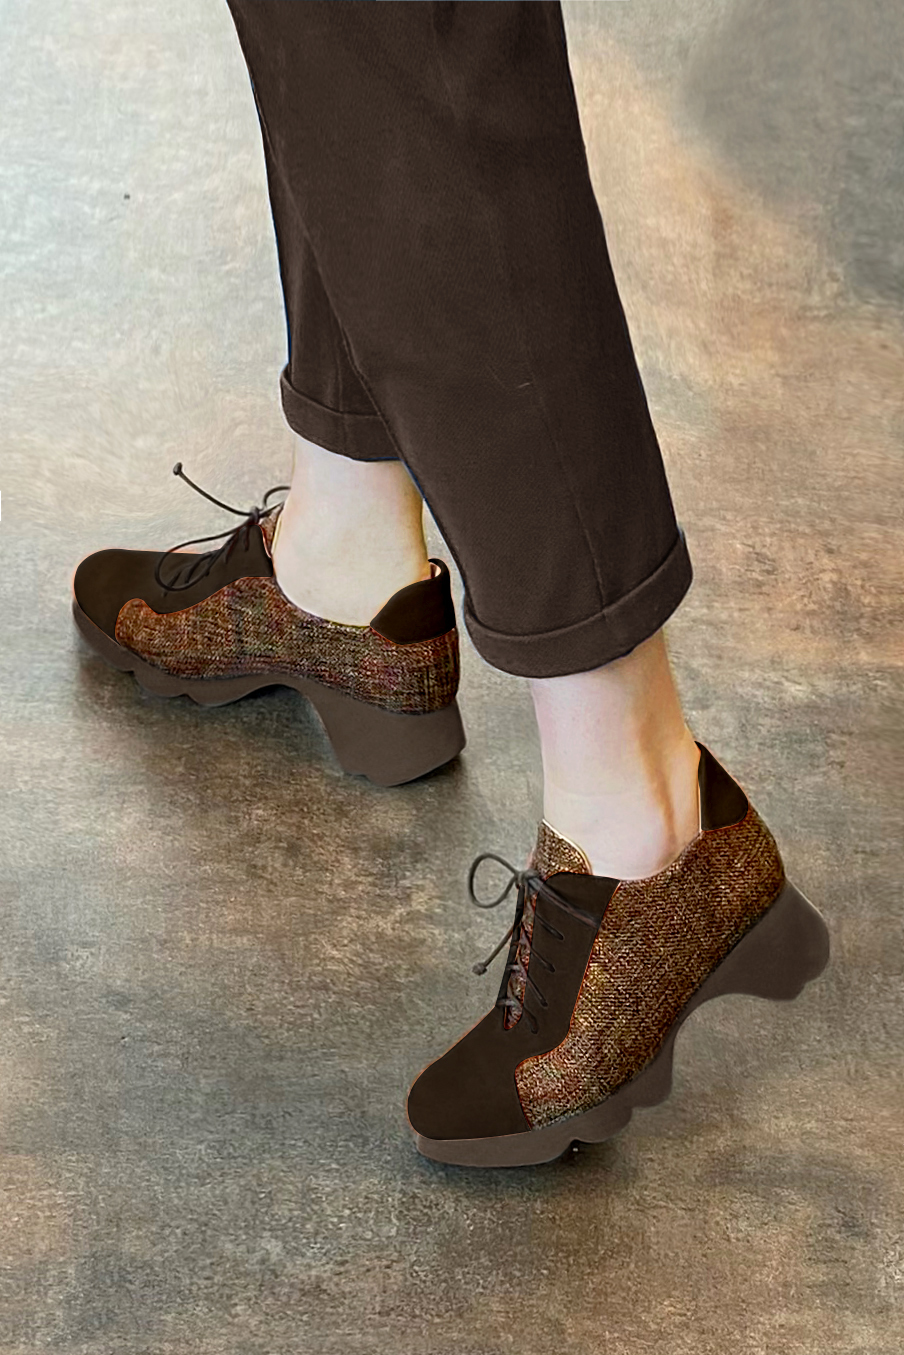 Chaussure femme à lacets : Derby sport couleur marron ébène et orange corail.. Vue porté - Florence KOOIJMAN